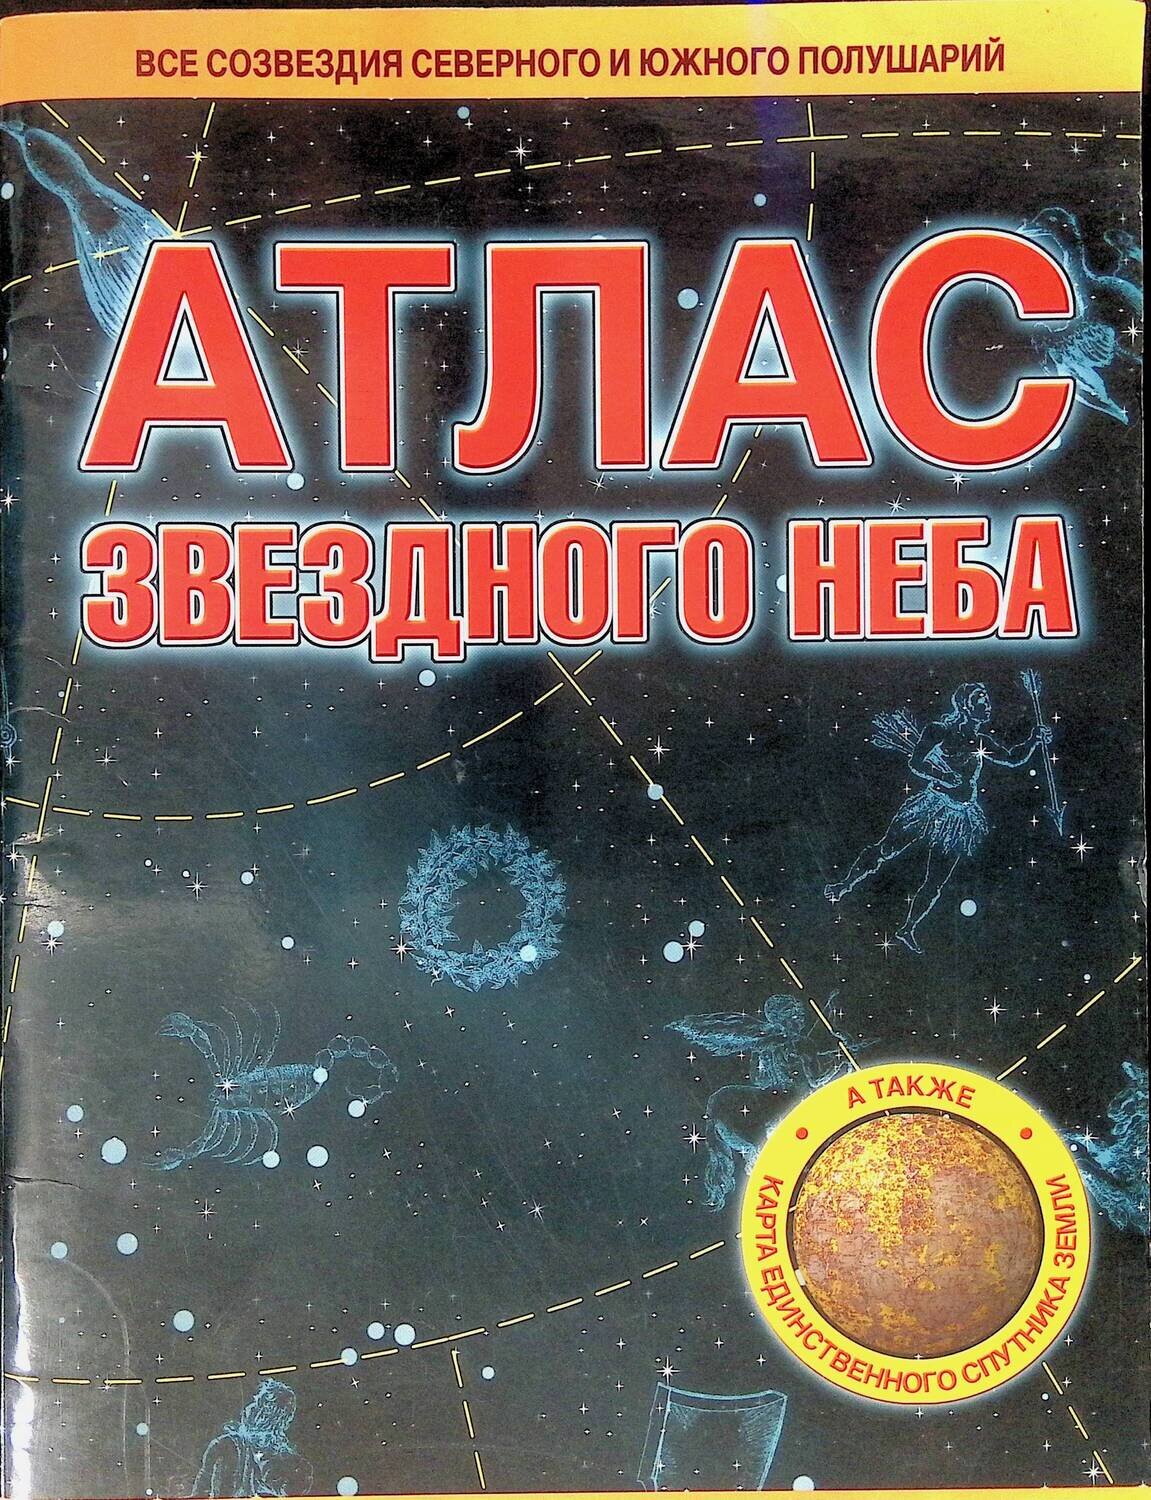 Атлас звездного неба; Шимбалев А.А.